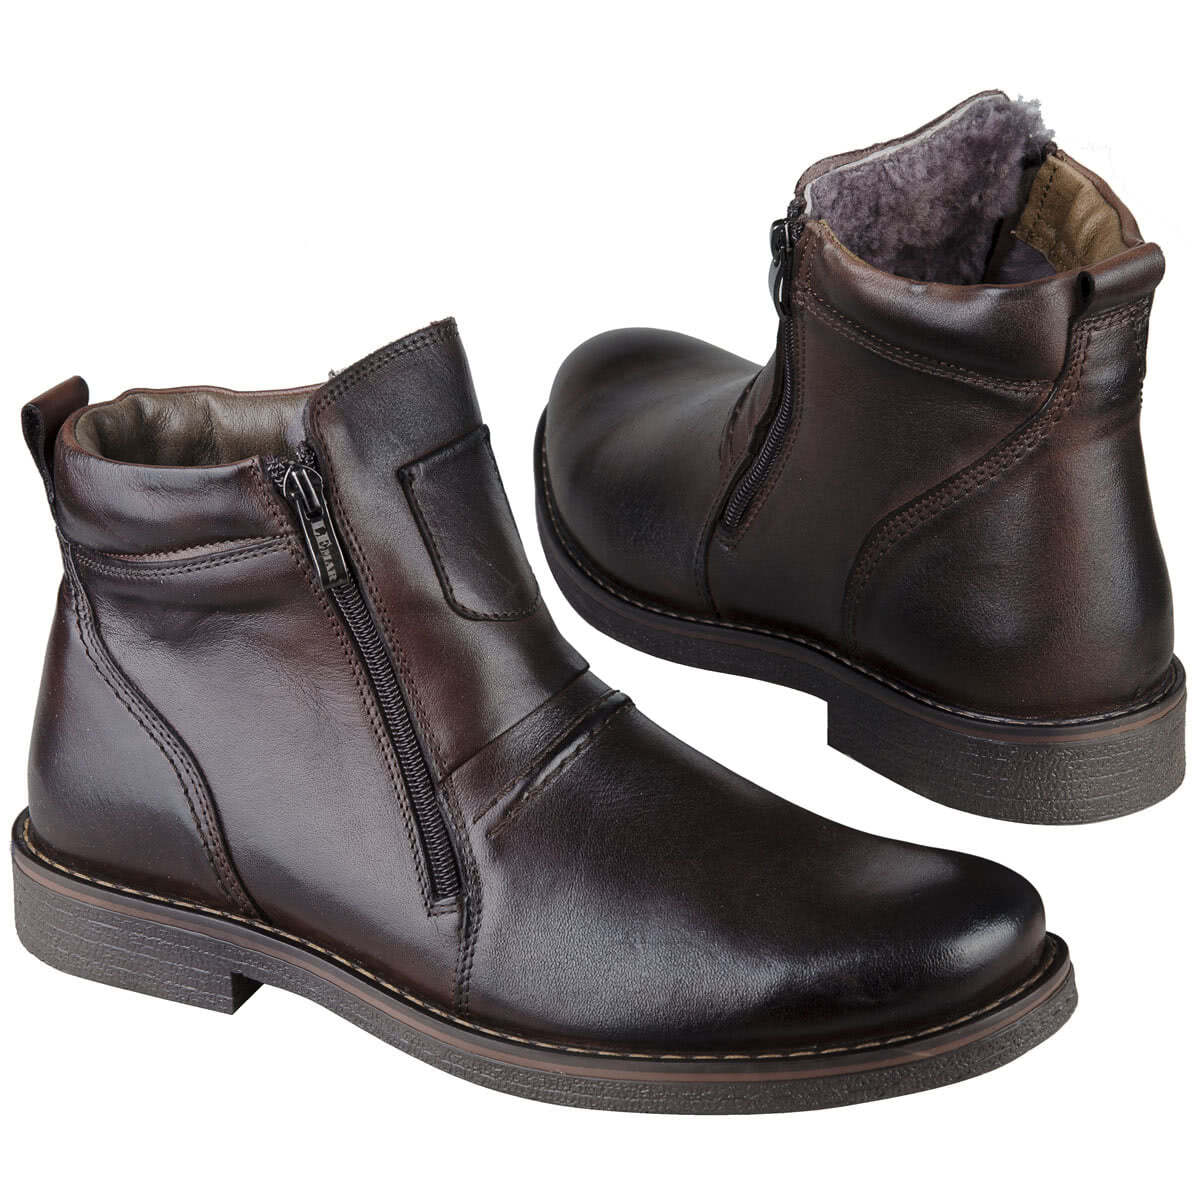 Зимние мужские ботинки на натуральном меху темно-коричневого цвета купить винтернет магазине Kwinto